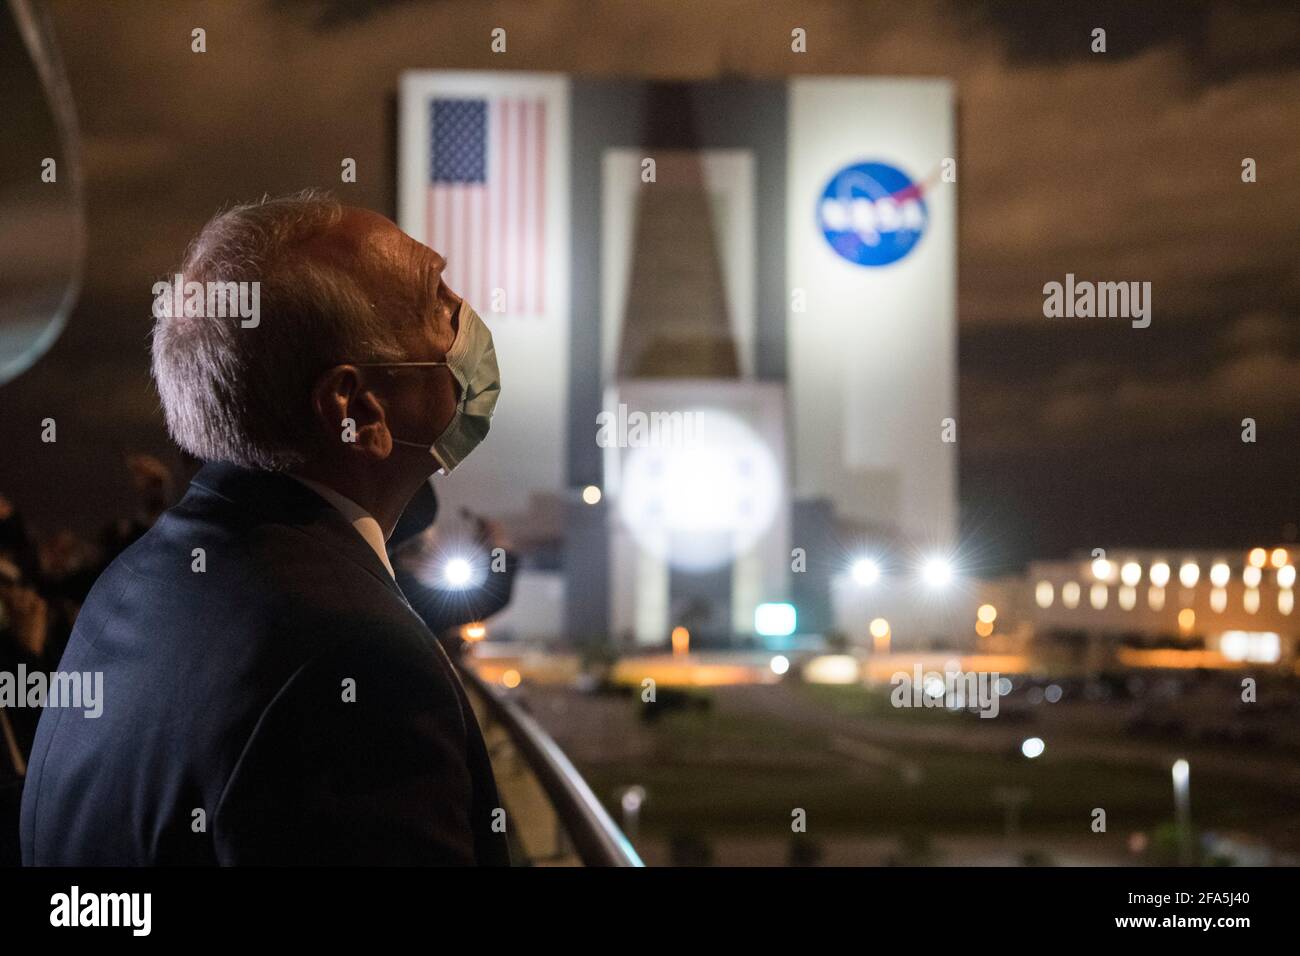 Steve Jurczyk, administrador interino de la NASA, observa el lanzamiento de un cohete SpaceX Falcon 9 que transporta la nave espacial Crew Dragon de la compañía en la misión SpaceX Crew-2 de la NASA con los astronautas de la NASA Shane Kimbrough y Megan McArthur, astronauta de la ESA (Agencia Espacial Europea) Thomas Pesquet, Y el astronauta de la Agencia de Exploración Aeroespacial de Japón (JAXA), Akihiko Hoshide, a bordo del viernes 23 de abril de 2021, desde el balcón del Edificio II de Apoyo a las Operaciones del Centro Espacial Kennedy de la NASA en Florida. La misión SpaceX Crew-2 de la NASA es la primera misión de rotación de la tripulación de la nave espacial SpaceX Crew Dragon y del cohete Falcon 9 Foto de stock